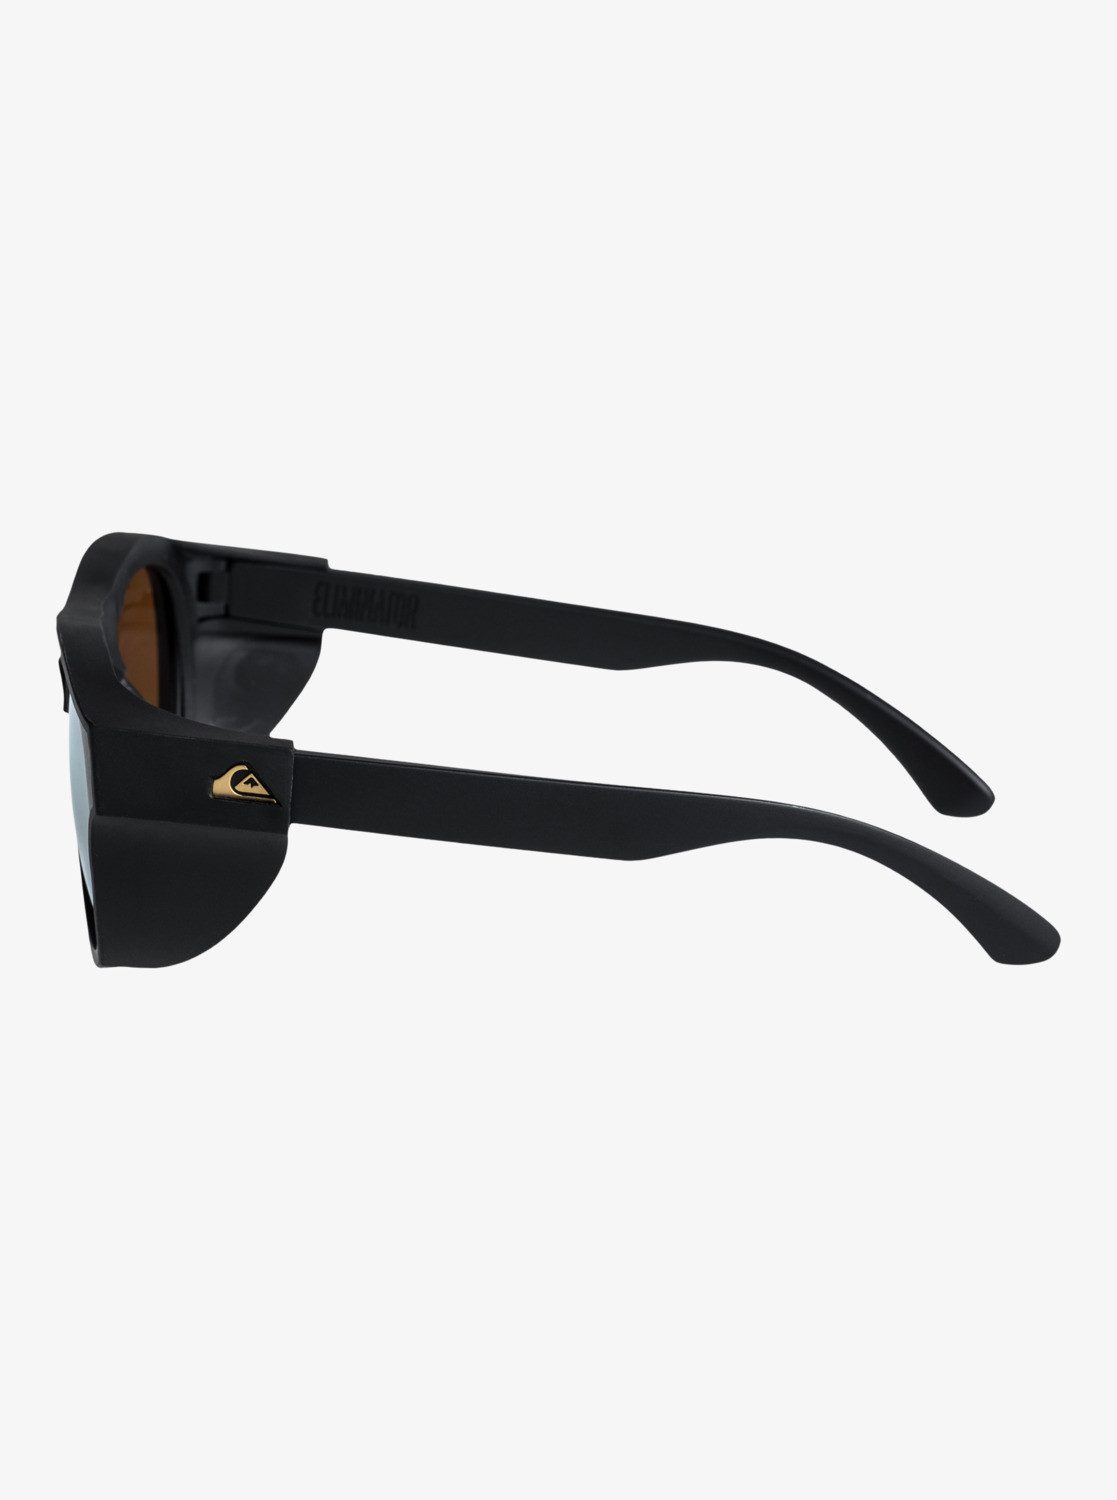 Sonnenbrille Quiksilver Black/Flash Eliminator+ Gold